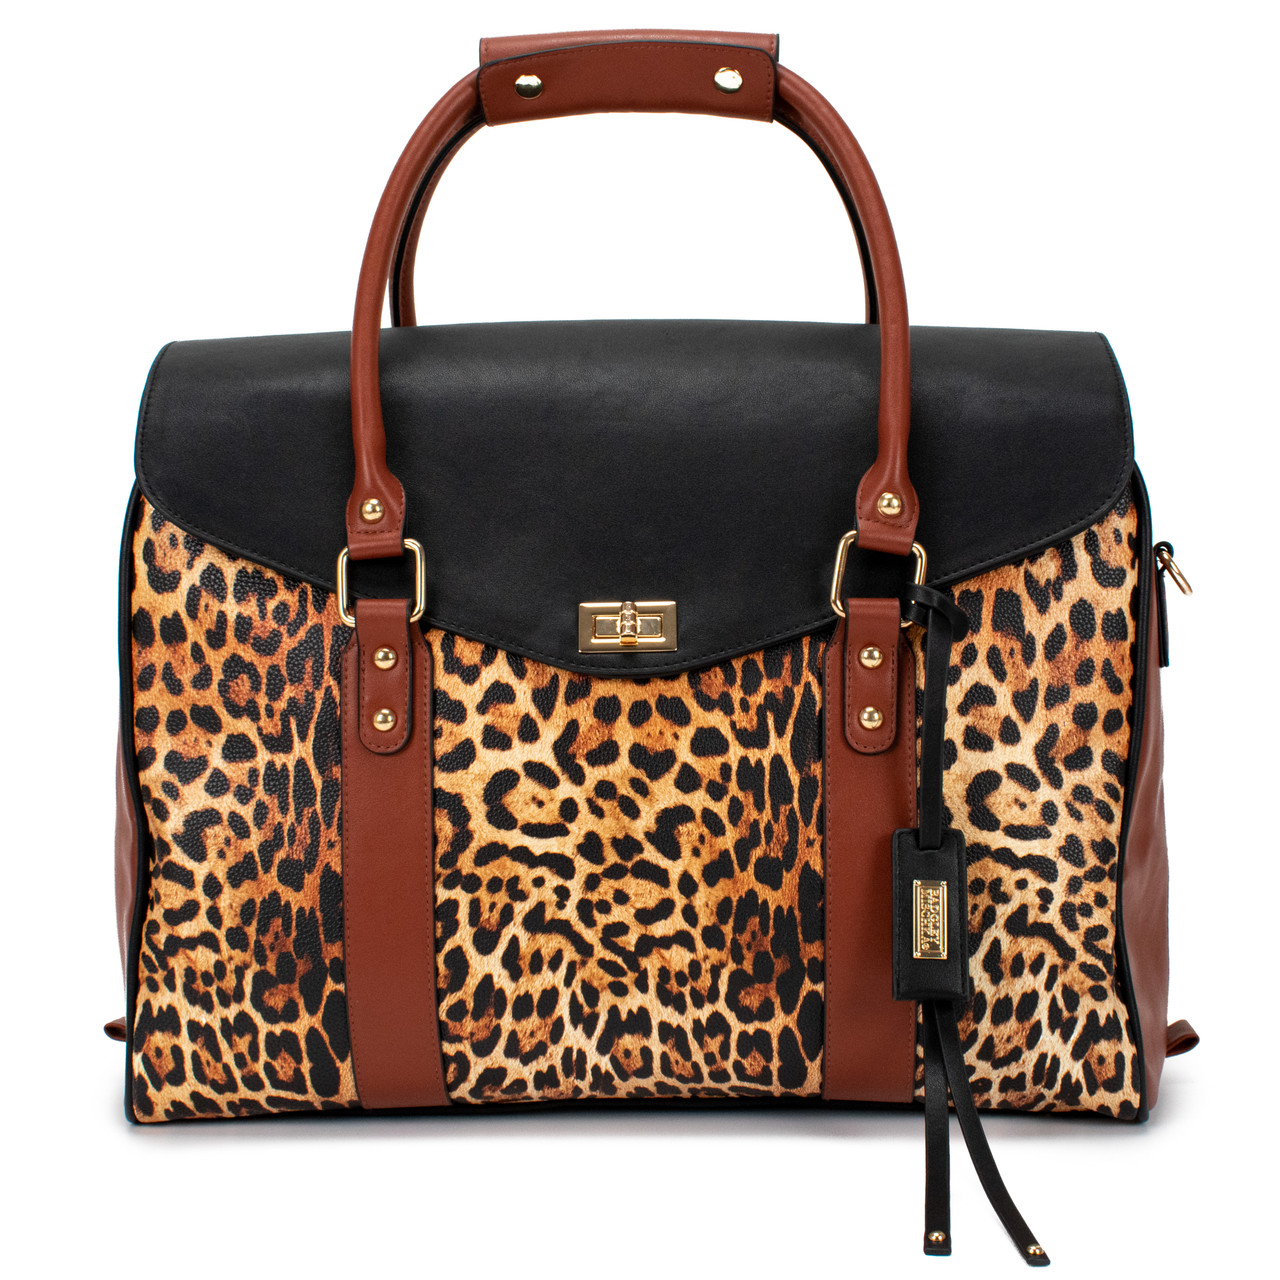 Leopard Weekender Tote Bag by Badgley Mischka